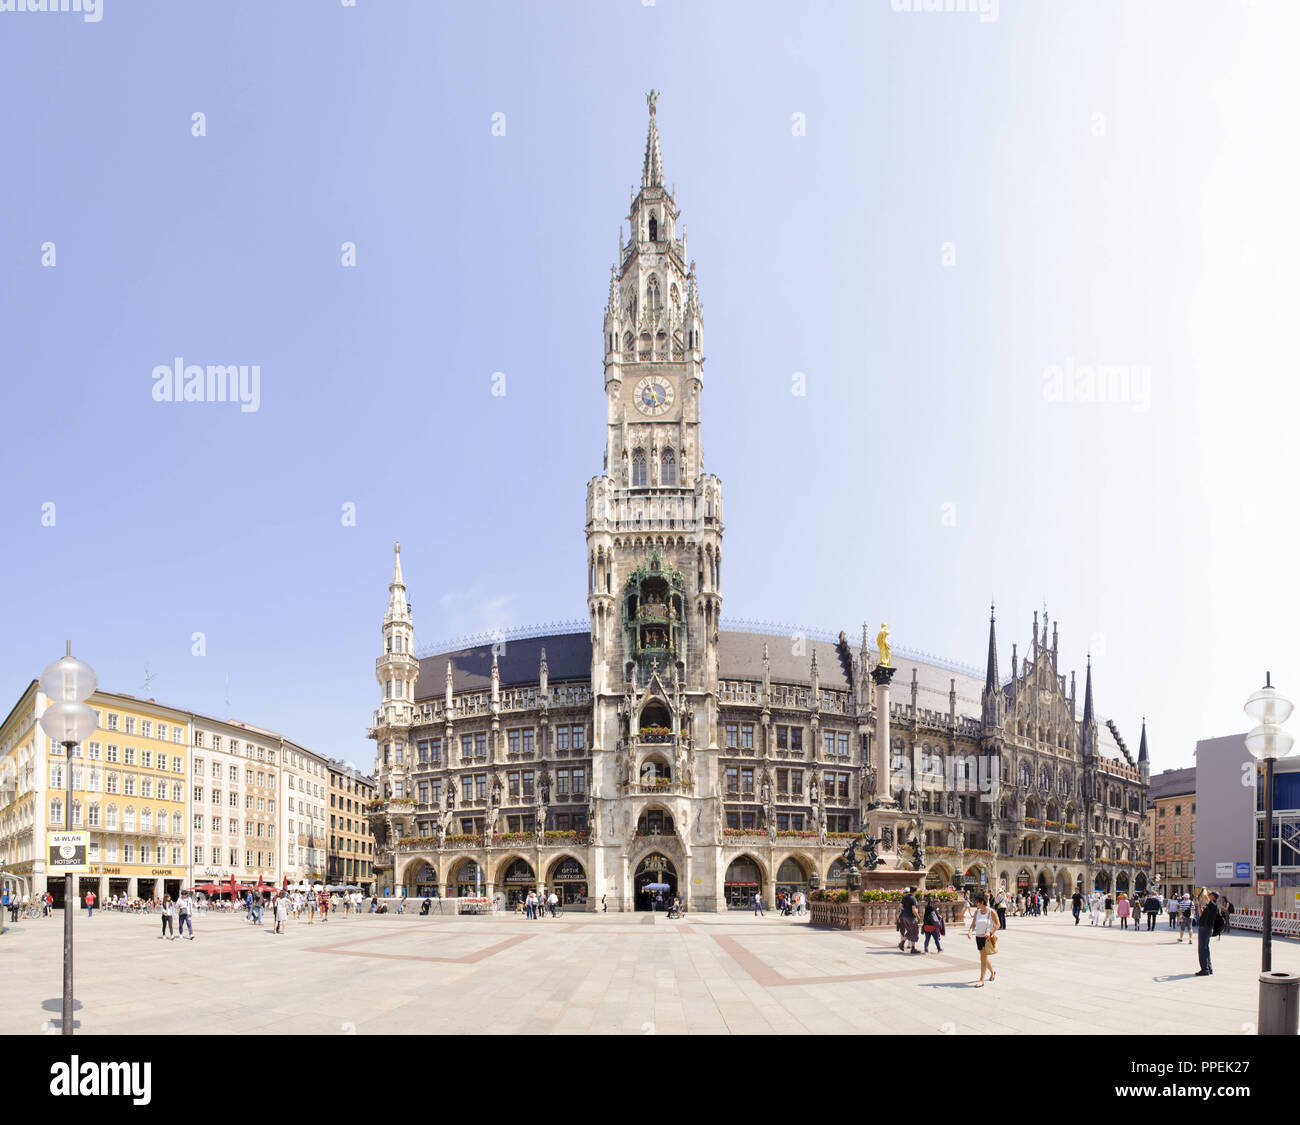 L'hôtel de ville sur la Marienplatz à Munich est le siège du maire de Munich, le conseil de ville et le siège du gouvernement de la ville. Dans le Rathausturm (tour), le Glockenspiel avec le Schaefflertanz (la danse des tonneliers). Banque D'Images